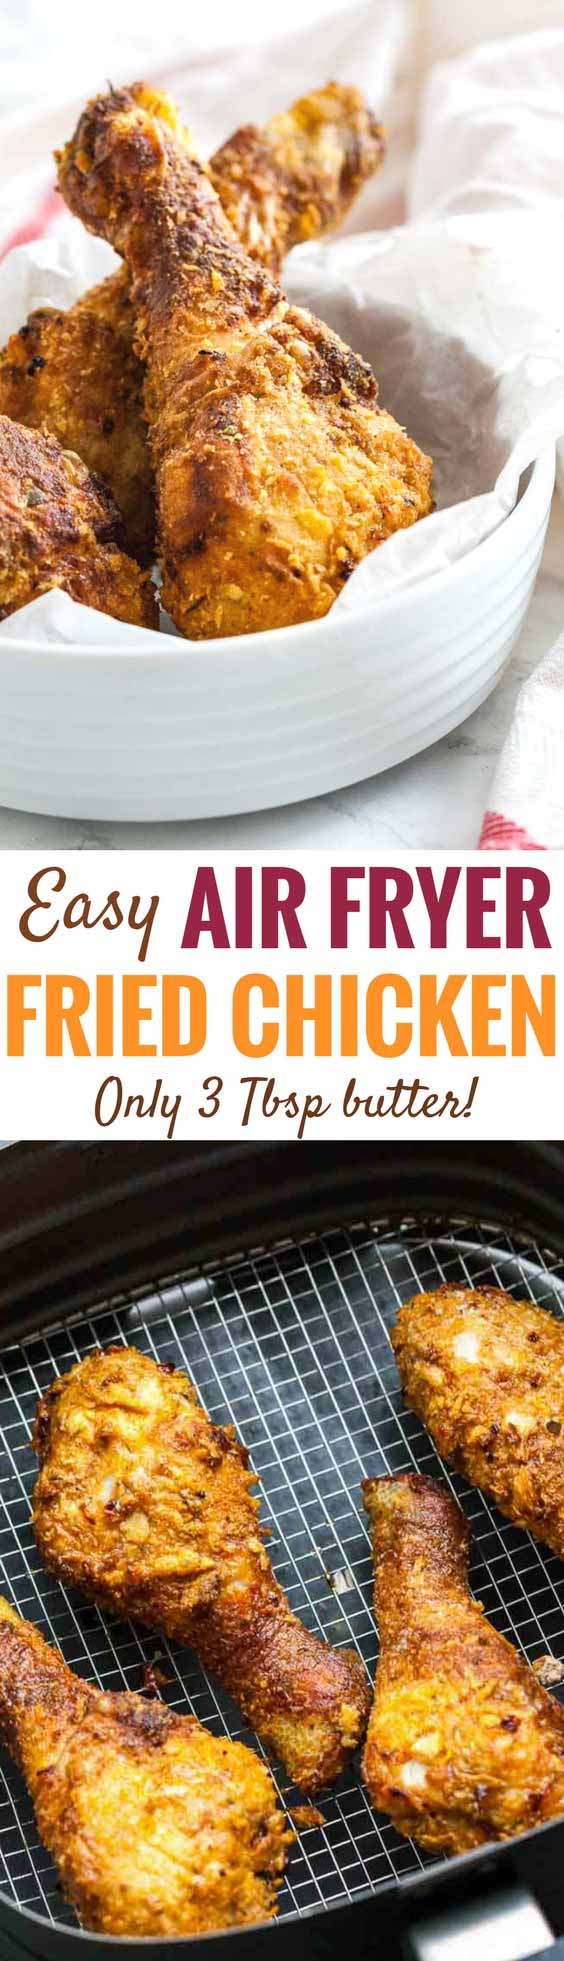 Air Fryer Fried Chicken Legs
 AirFryer Chicken Drumsticks Easy Air Fryer fried chicken